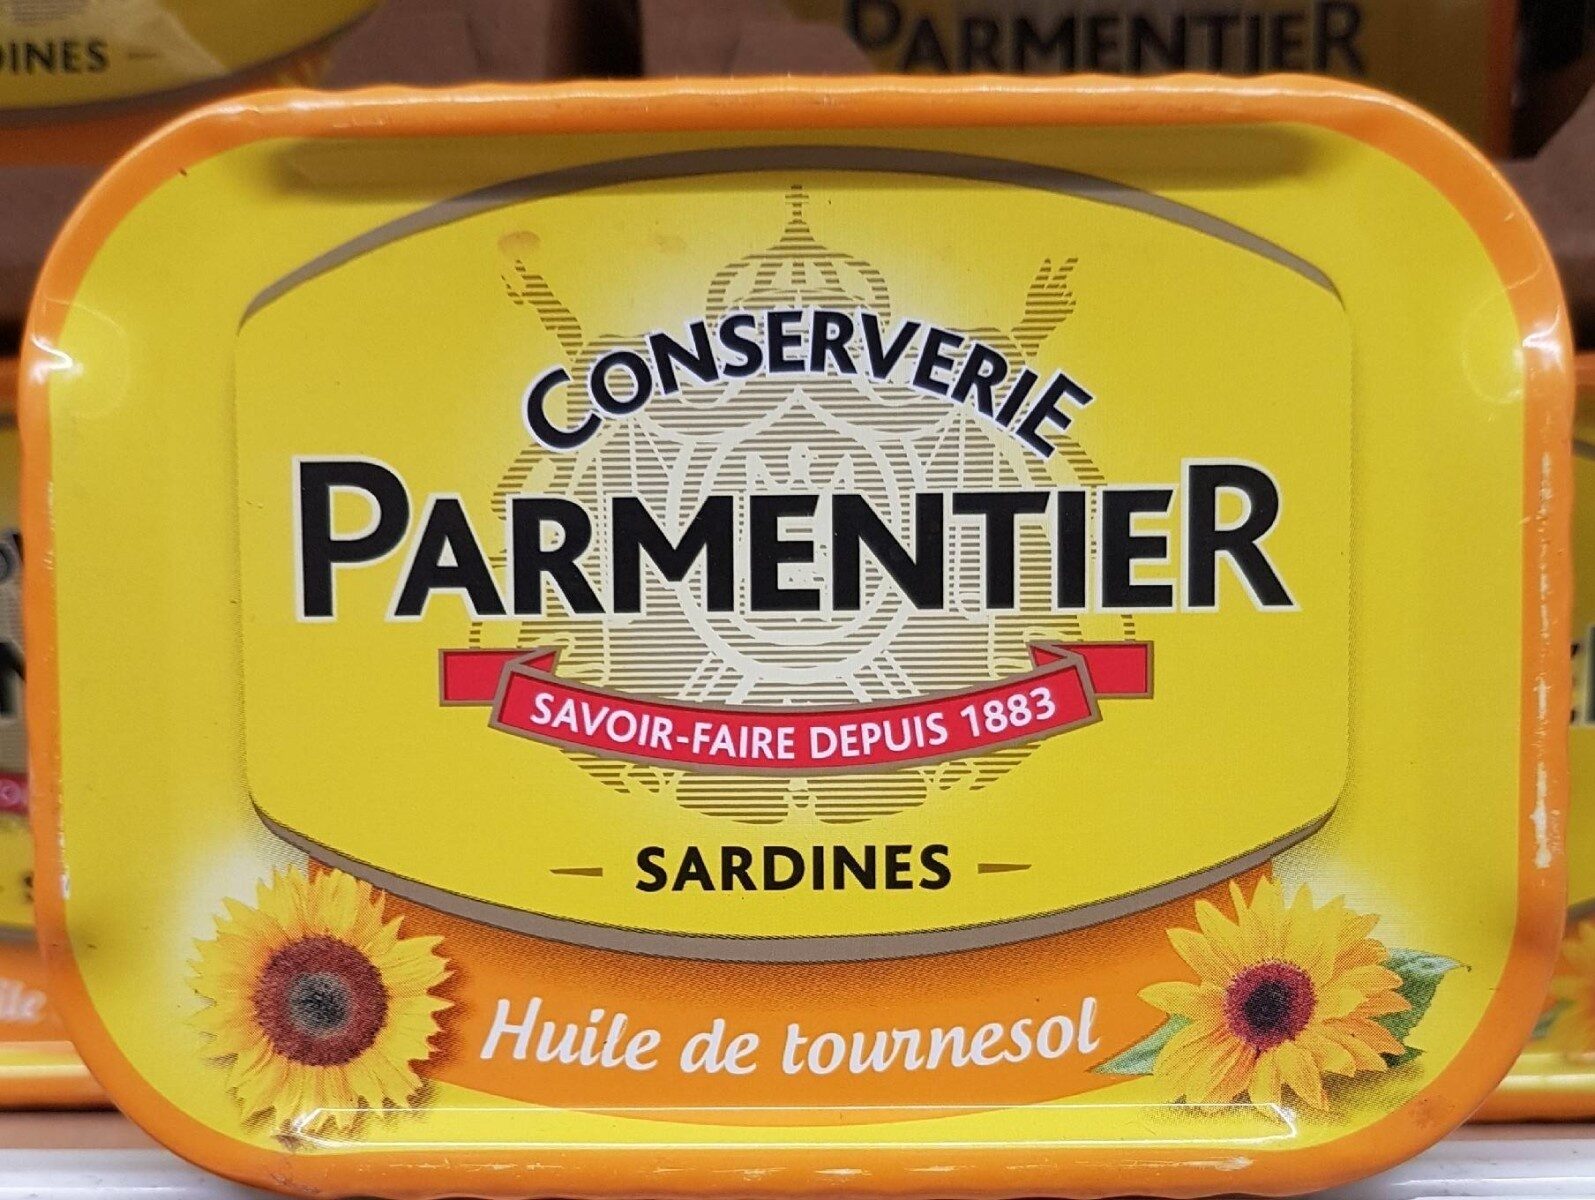 Conserverie Parmentier sardines - Instruction de recyclage et/ou informations d'emballage